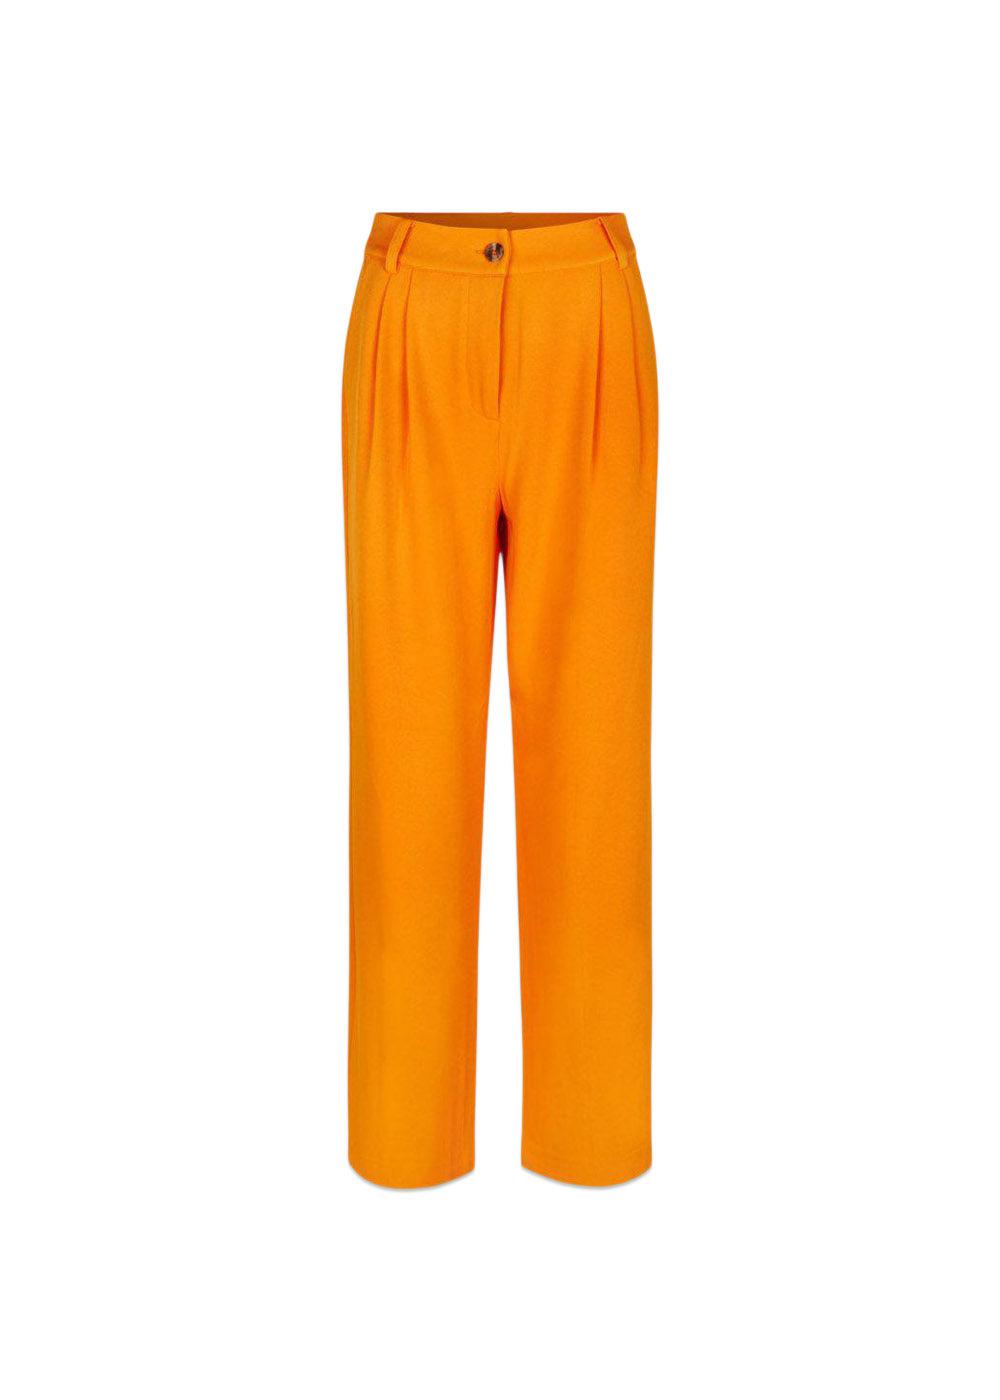 Modströms CayaMD pants - Vibrant Orange. Køb jakkesæt women her.